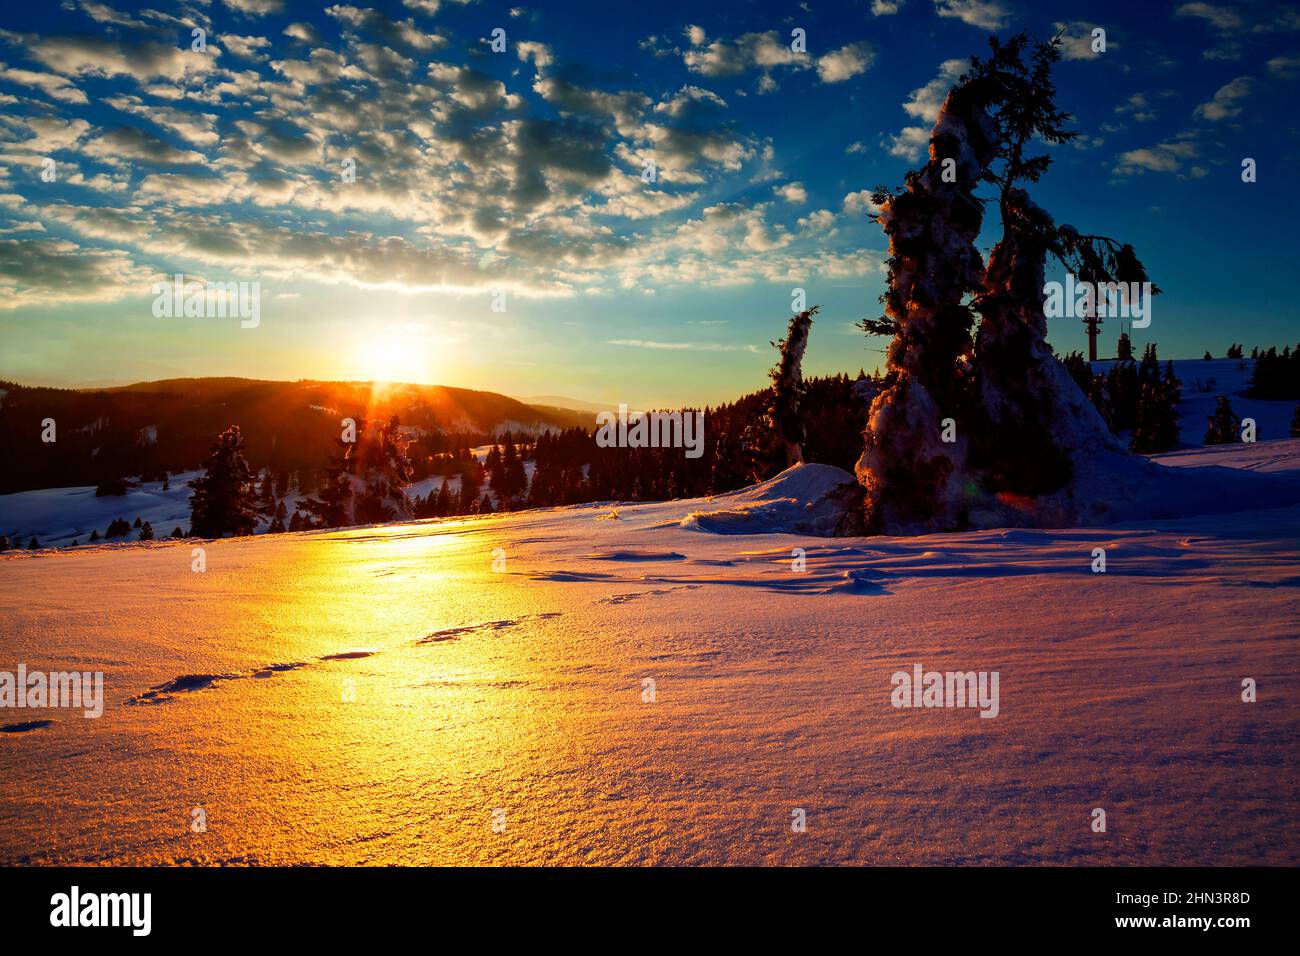 Puesta de sol frente a piceas cubiertas de nieve, invierno, Feldberg, Selva Negra, Baden-Württemberg, Alemania Foto de stock